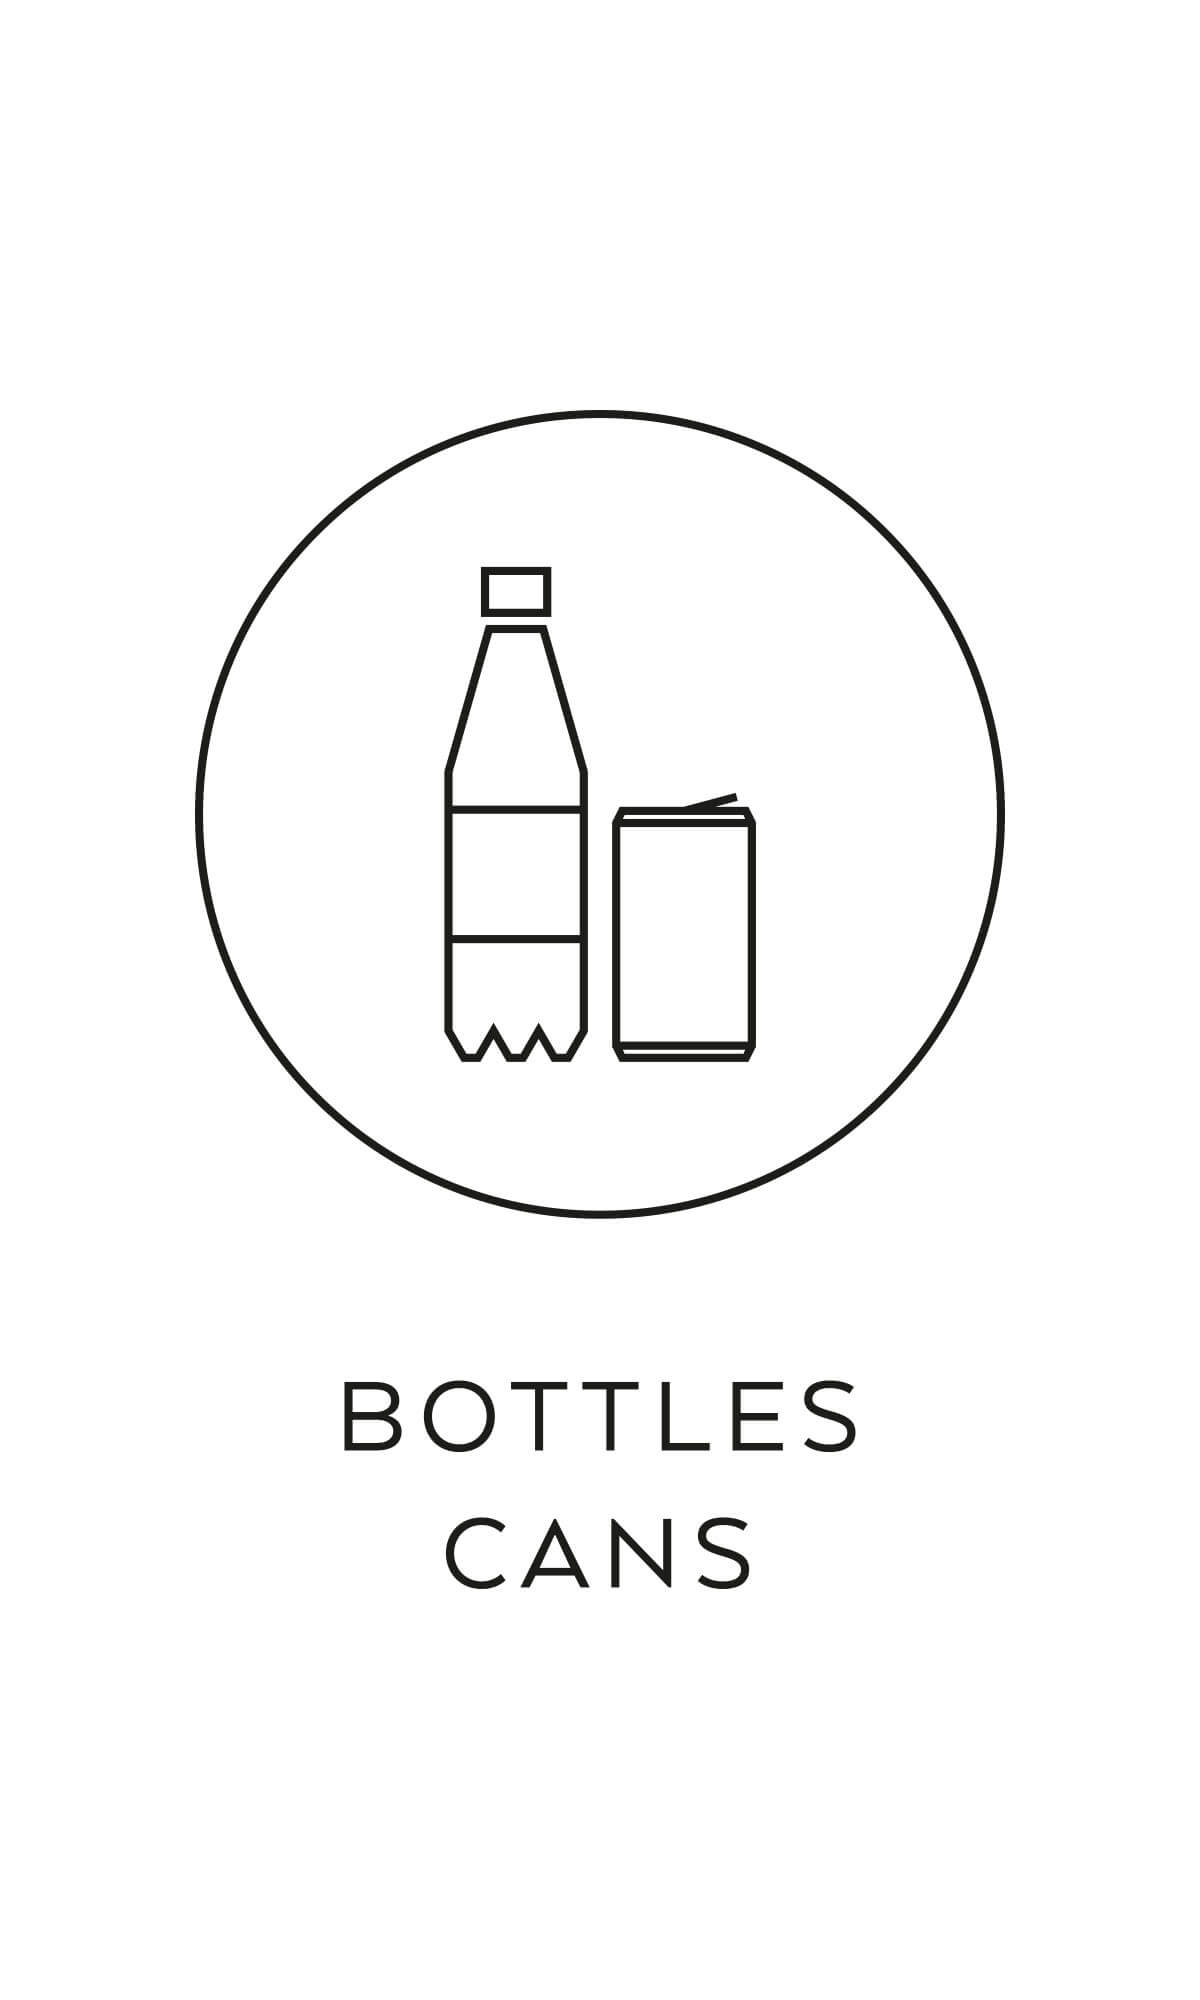 symbol källsortering PET burkar plastflaskor återvinning